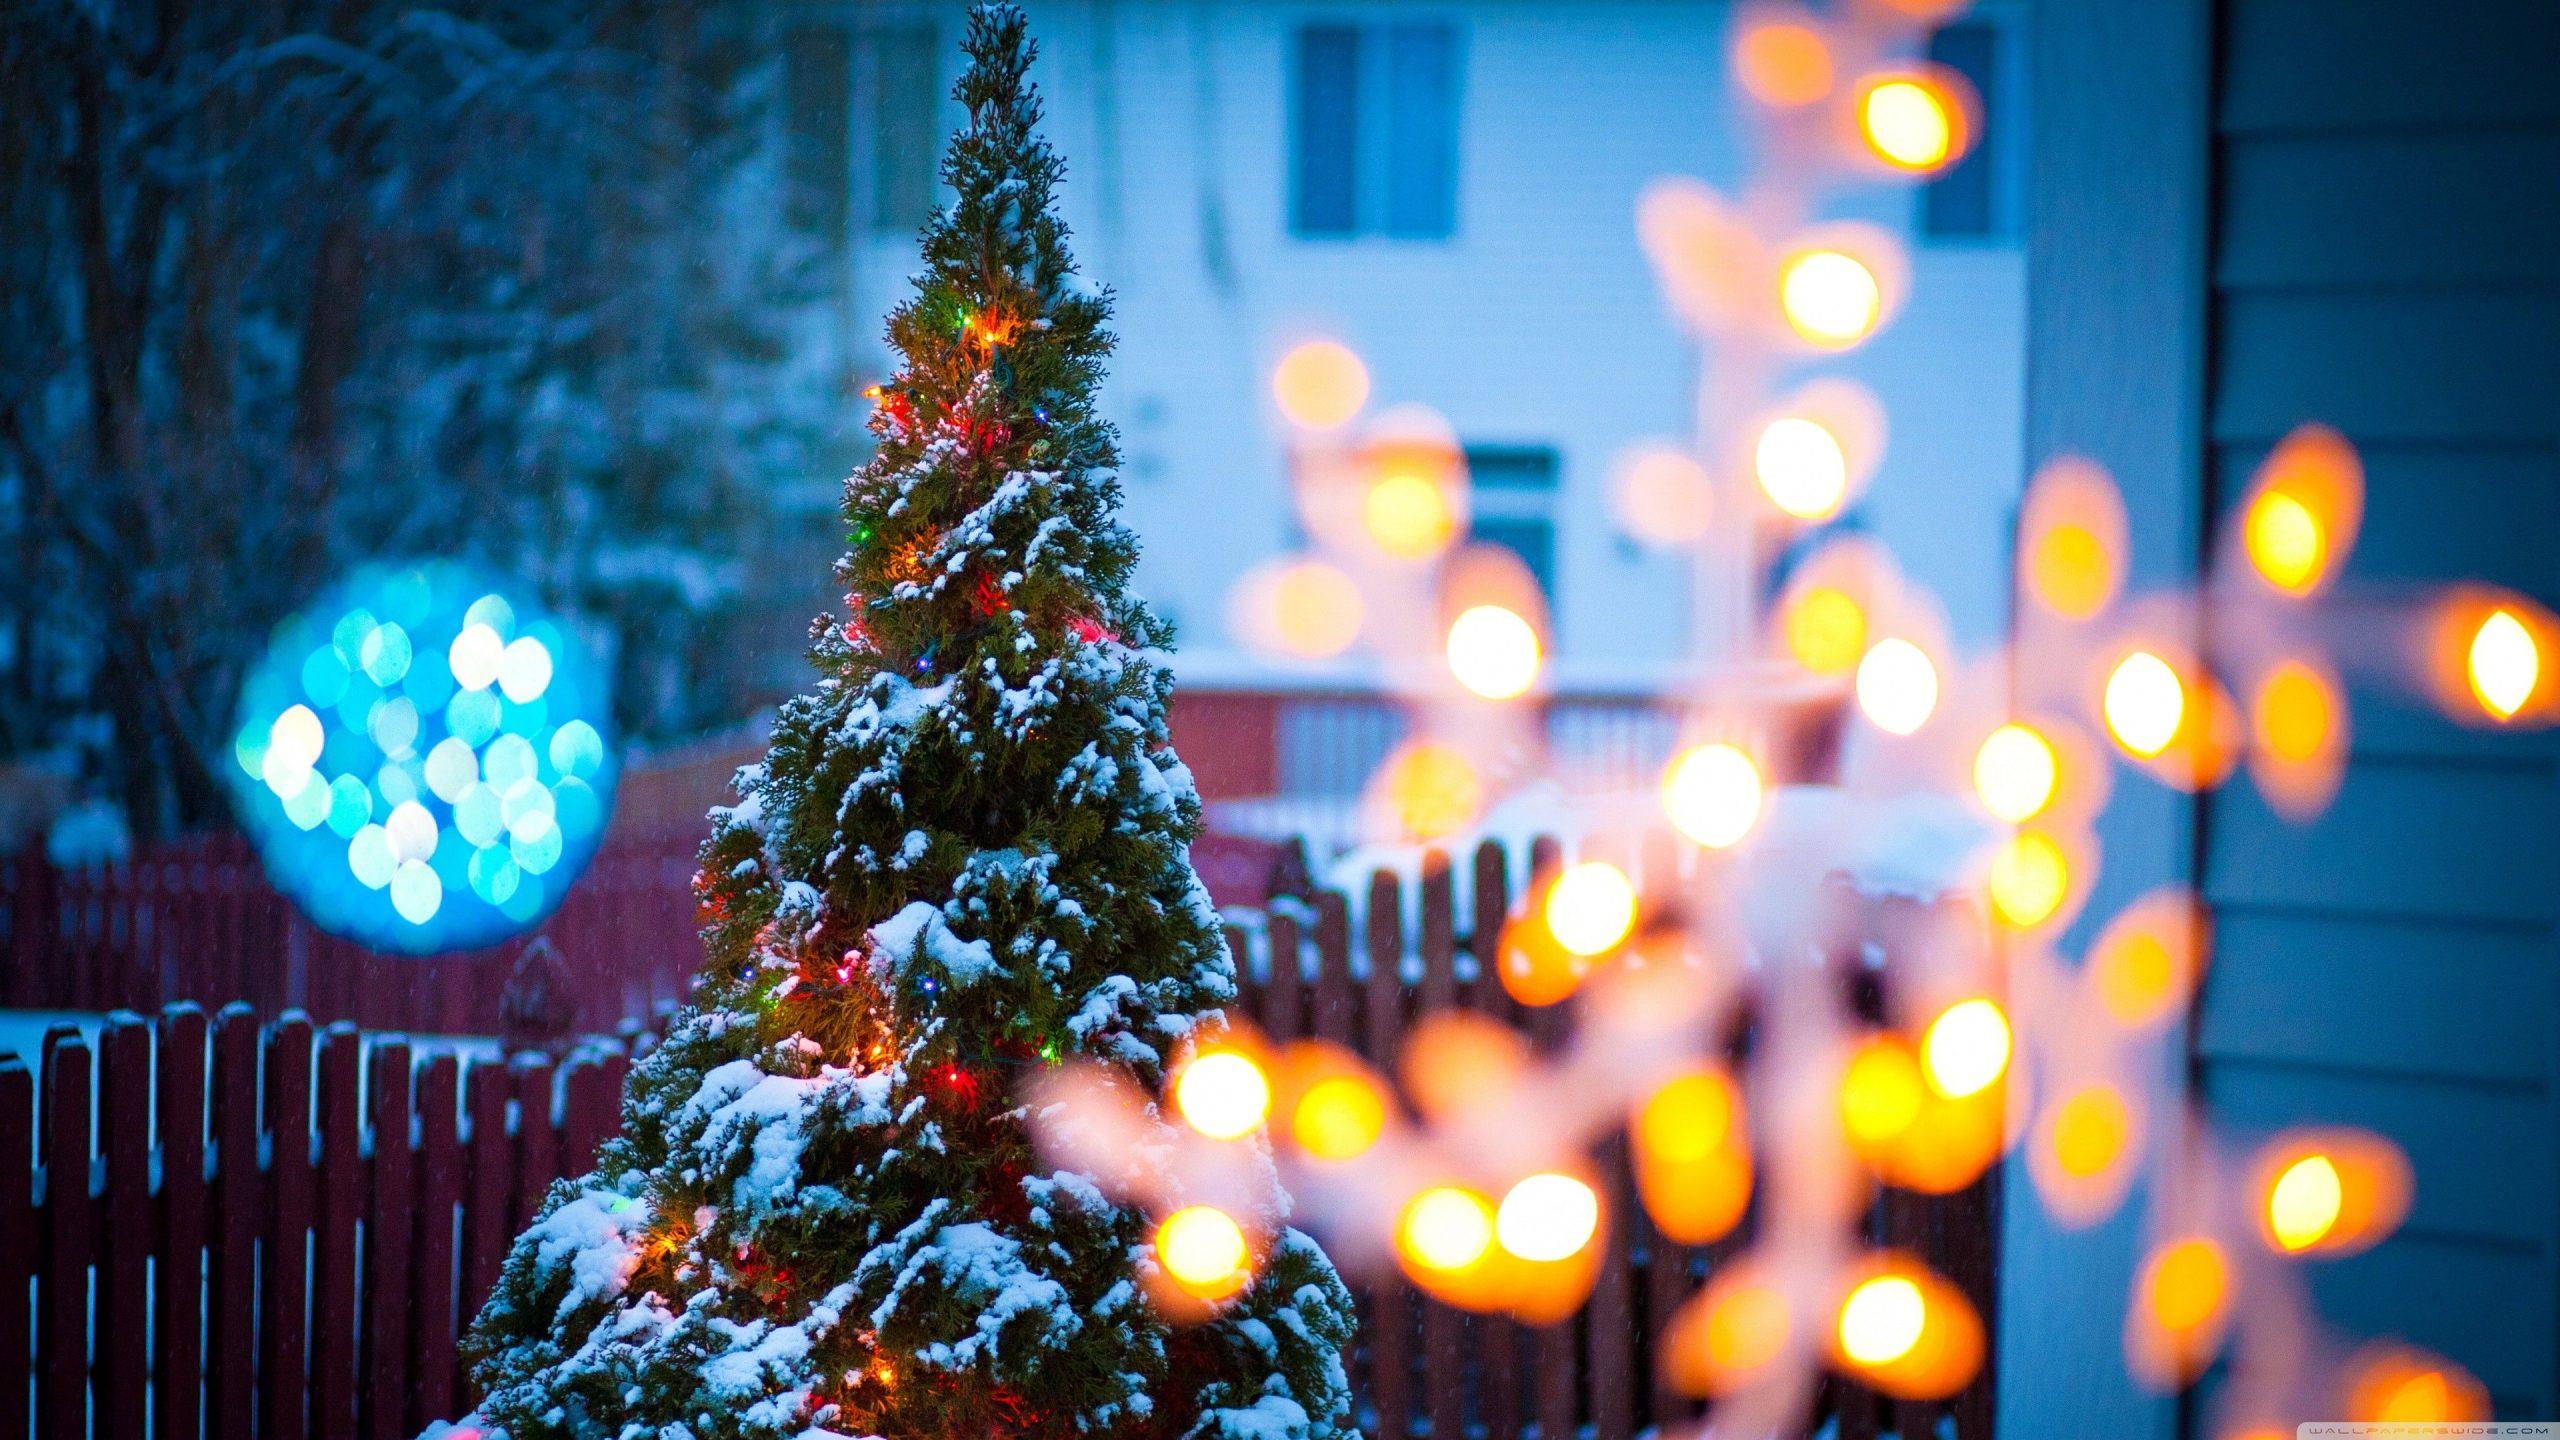 Cùng đón mùa giáng sinh với cây thông Noel lung linh, rực rỡ những đèn lấp lánh và những vật dụng trang trí tinh tế. Hãy cảm nhận khung cảnh đẹp nhất qua những hình ảnh cây thông Noel đầy ấn tượng và lãng mạn.